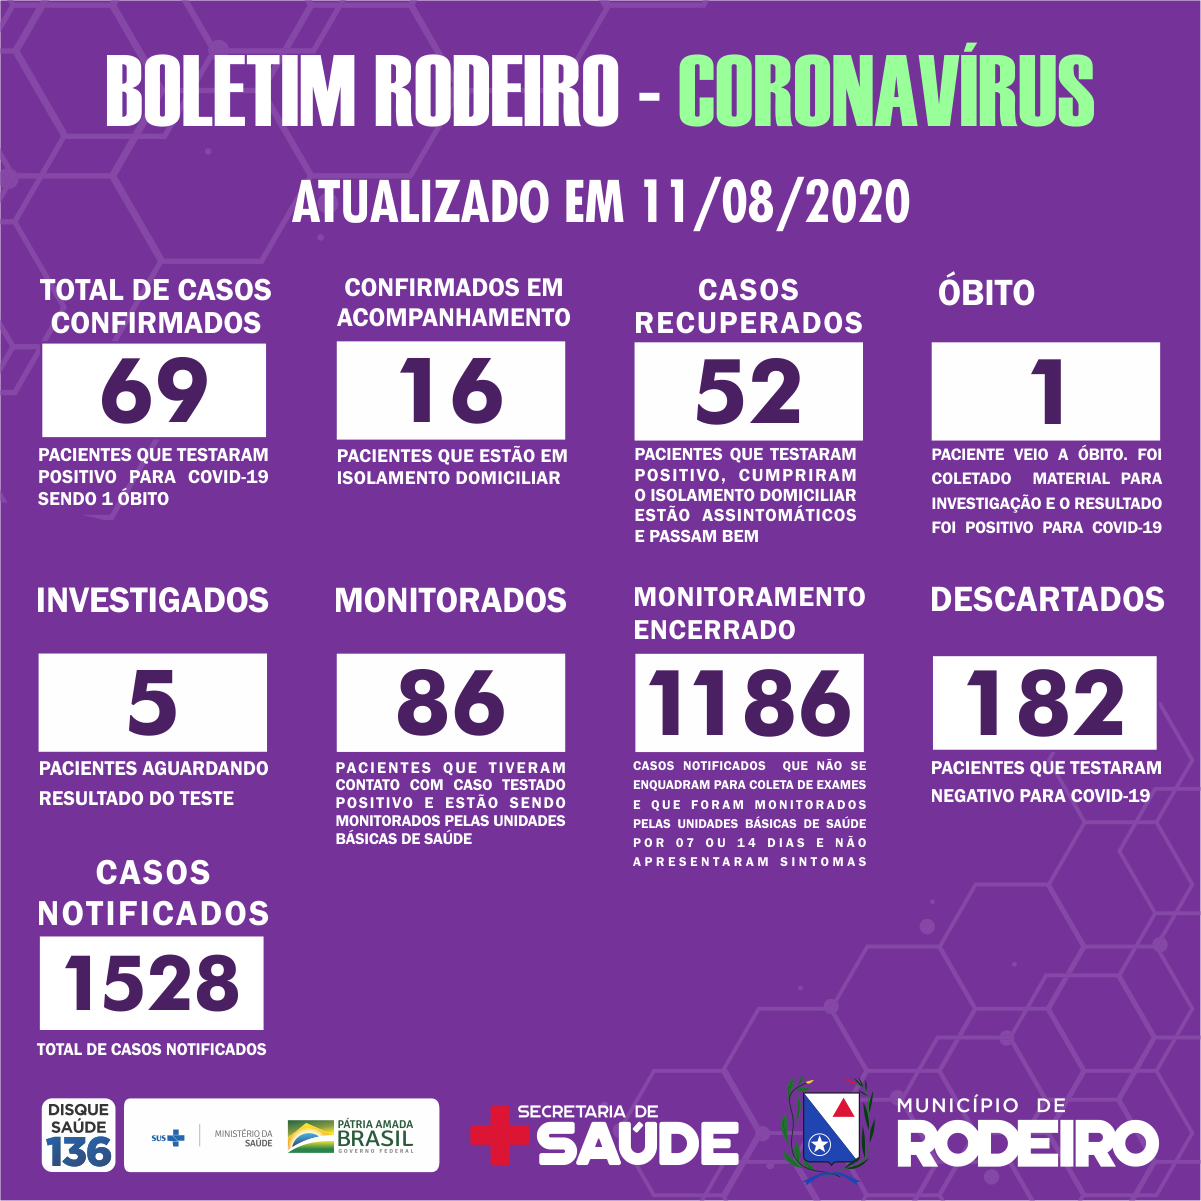 Boletim Epidemiológico do Município de Rodeiro sobre coronavírus, atualizado em 11/08/2020